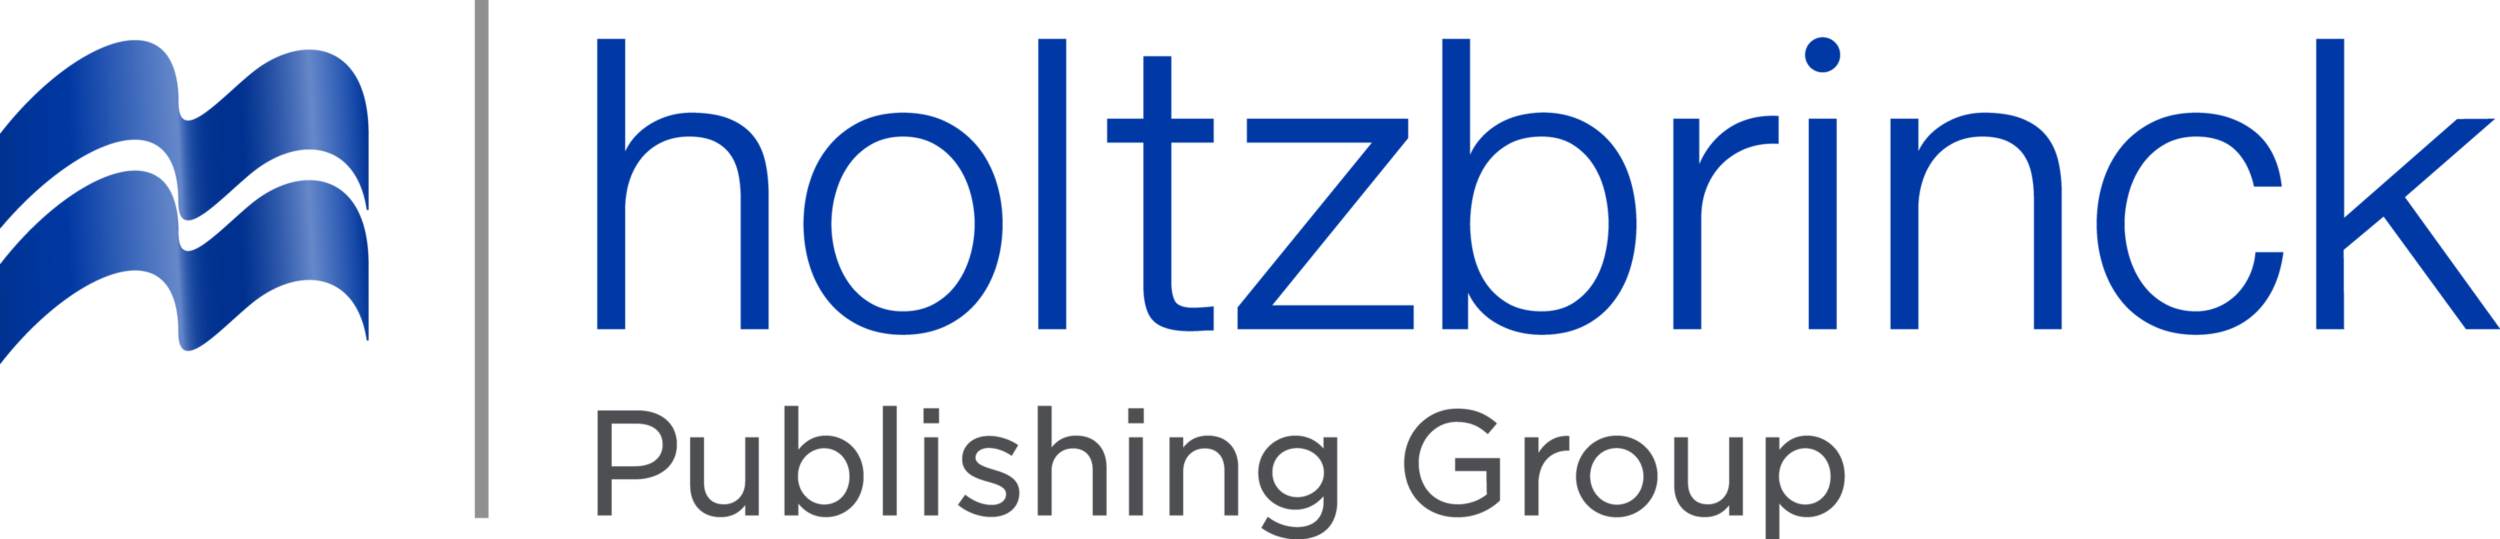 Logo_Holtzbrinck_Publ_Group.png